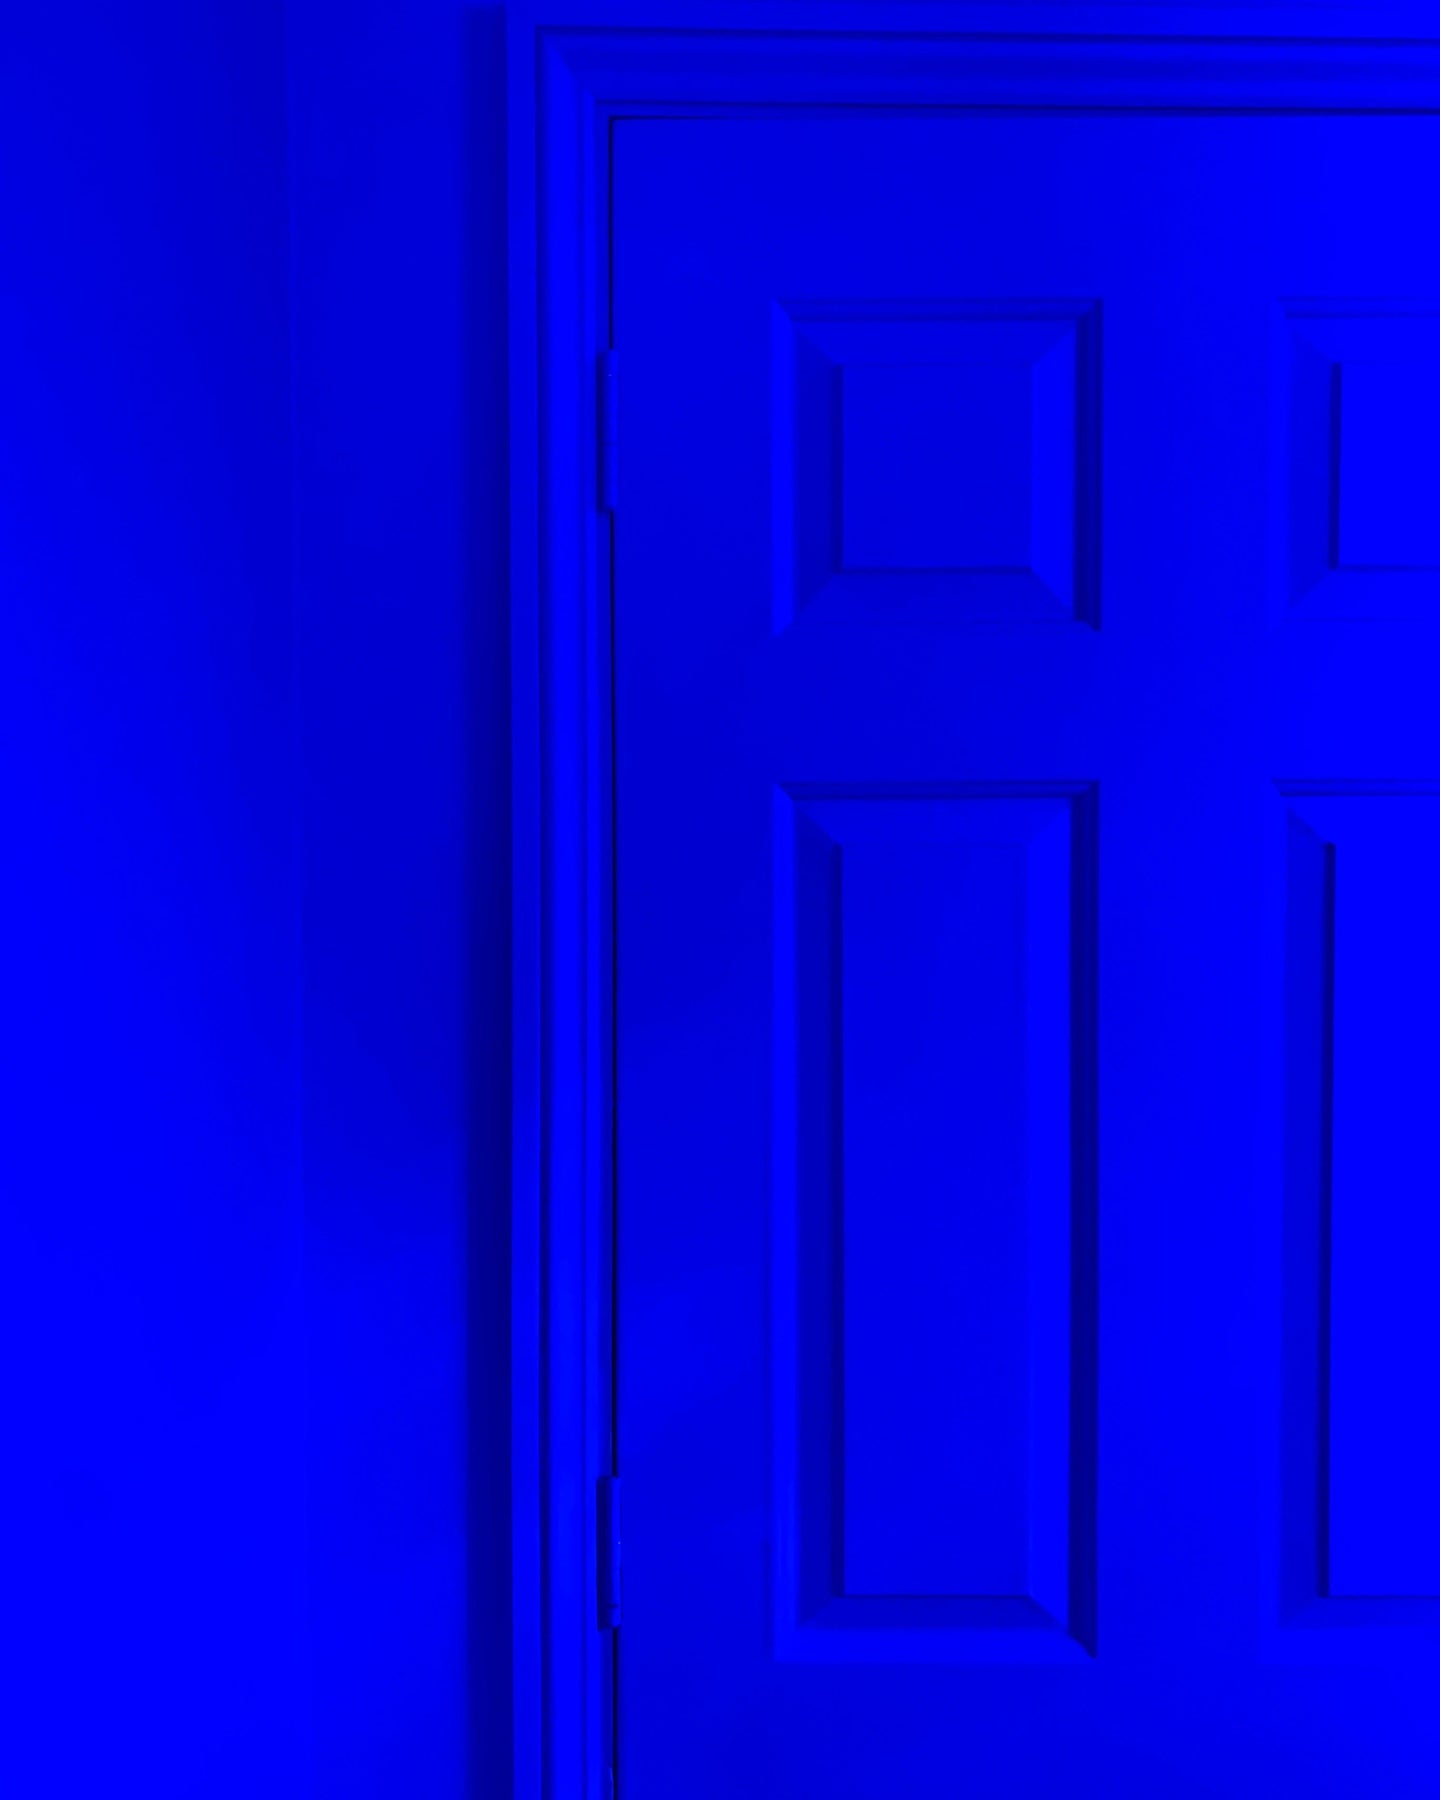 YesColours premium Electric Blue matt emulsion paint Dulux Paint, Coat Paint, Lick Paint, Edward Bulmer, Blue Blues Electric Electric Blue Majorelle Majorelle Blue Matt Emulsion Paint